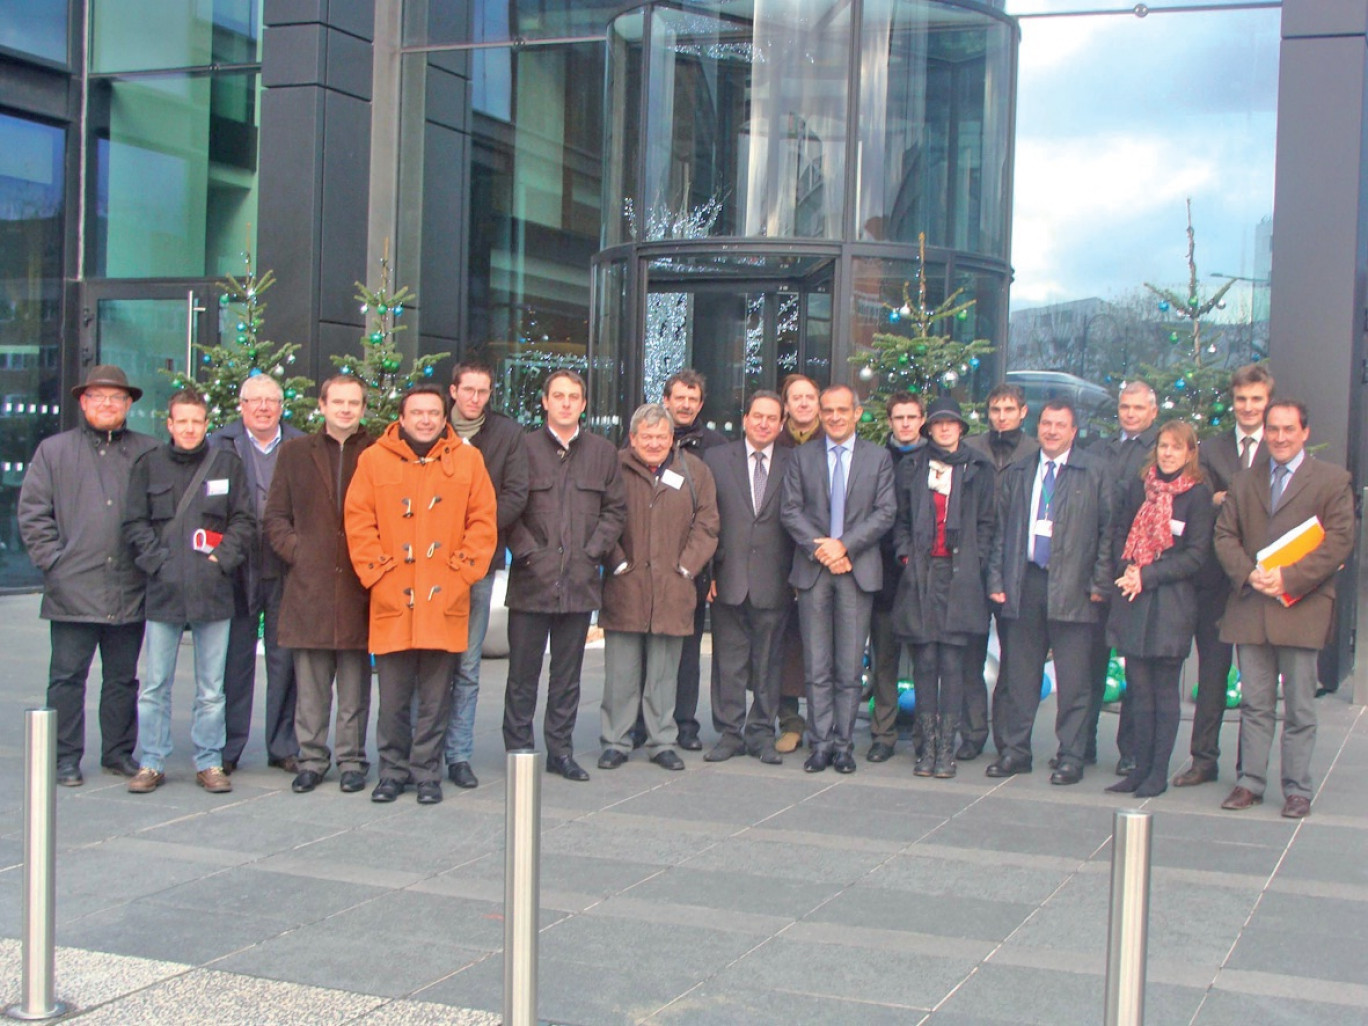 La délégation nordiste devant les bureaux de Schneider Electric, accueillie par Jean-Pascal Tricoire, président du directoire (mains croisées, cravate bleu ciel).